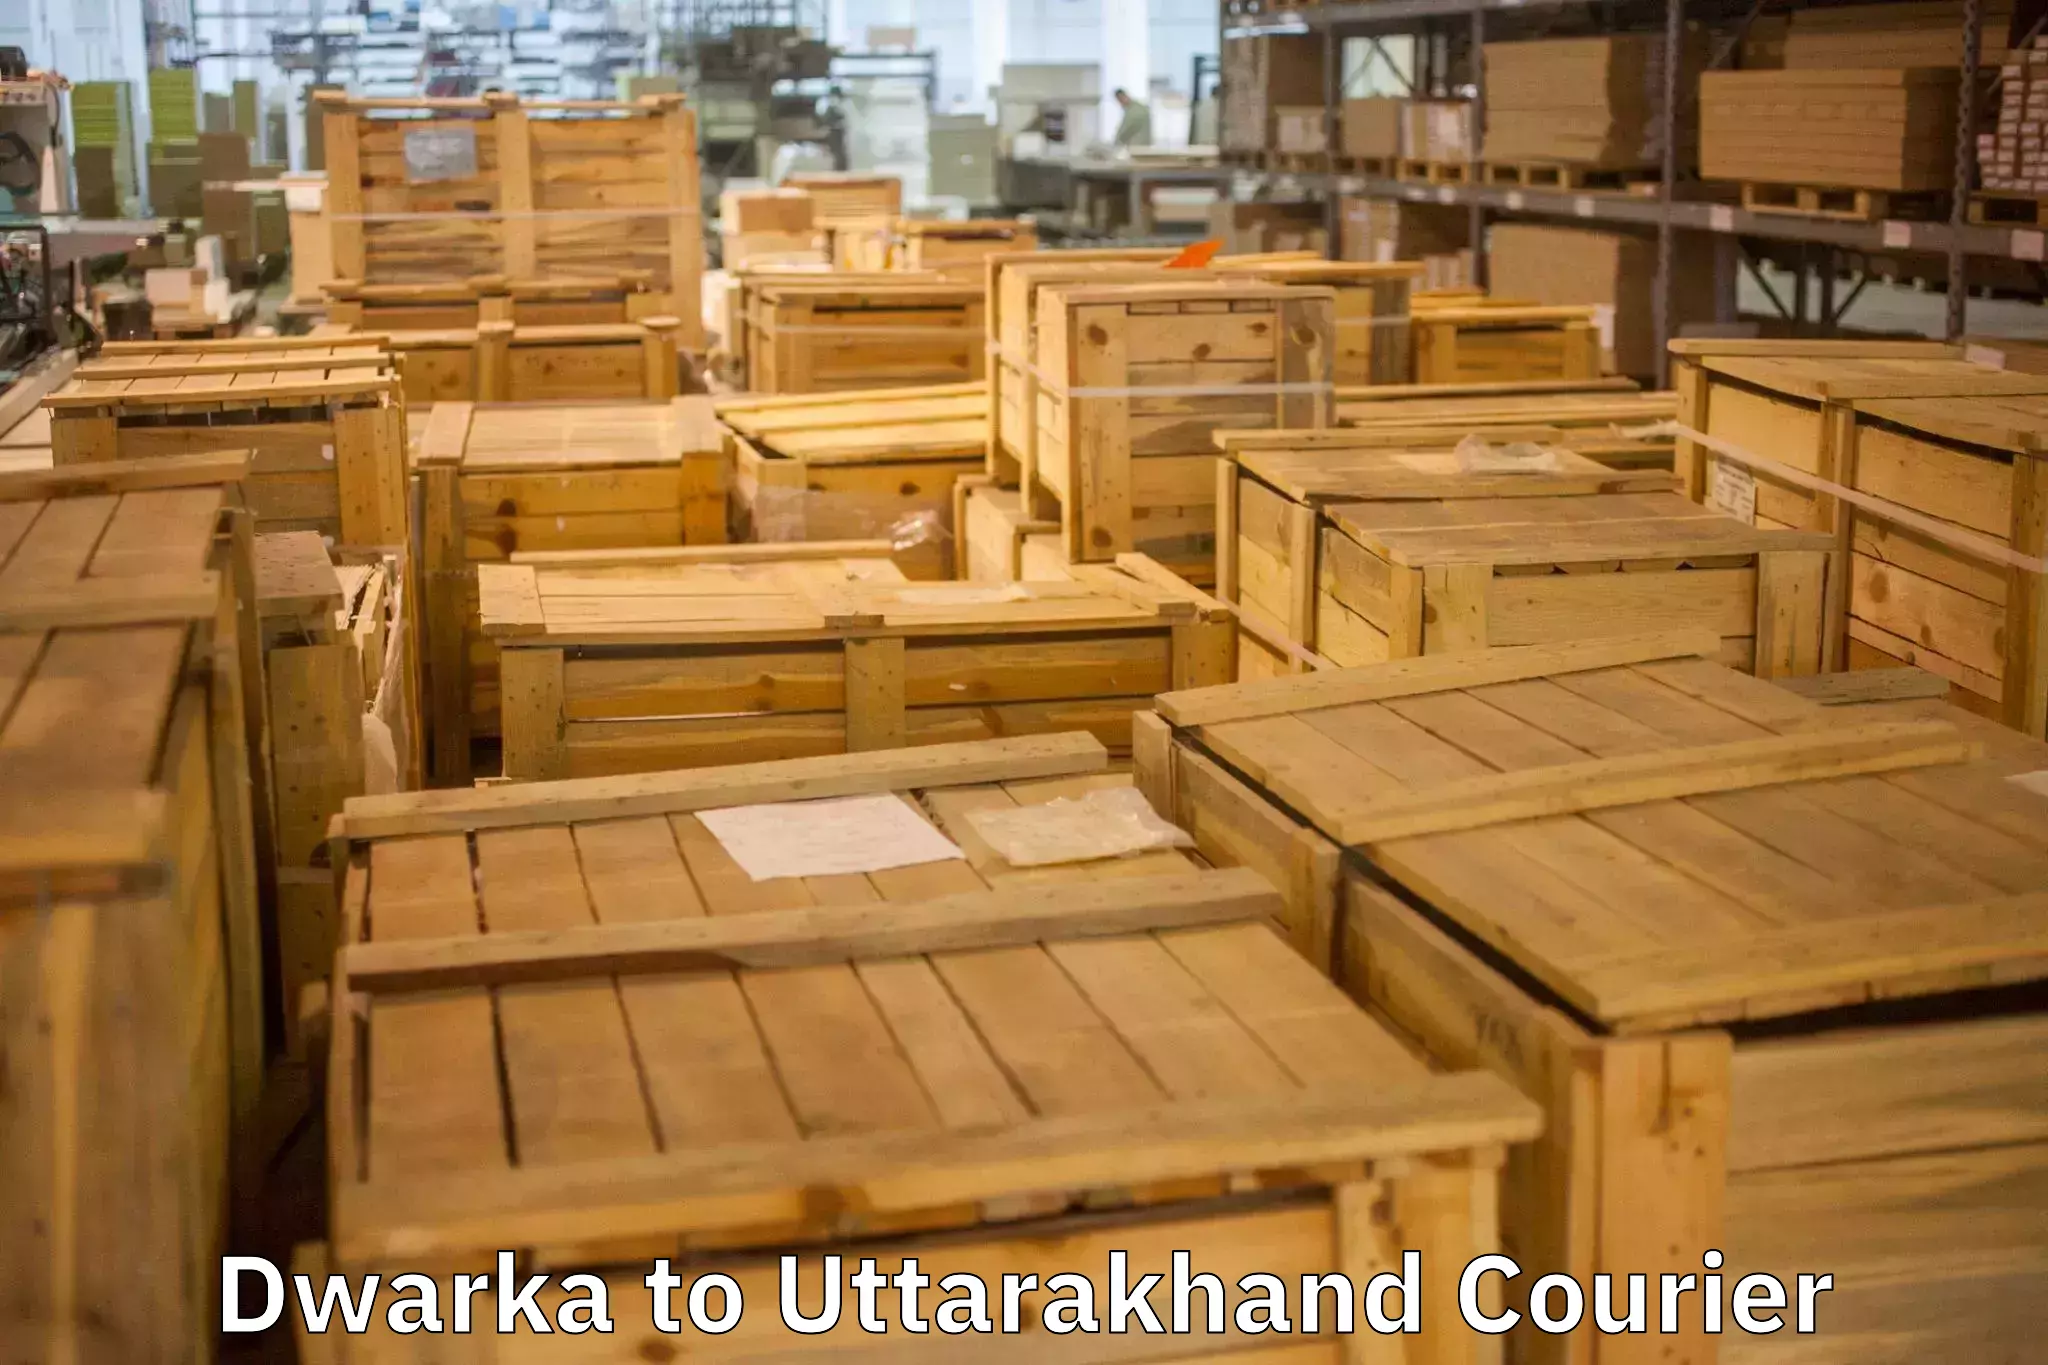 Residential moving experts Dwarka to Uttarakhand